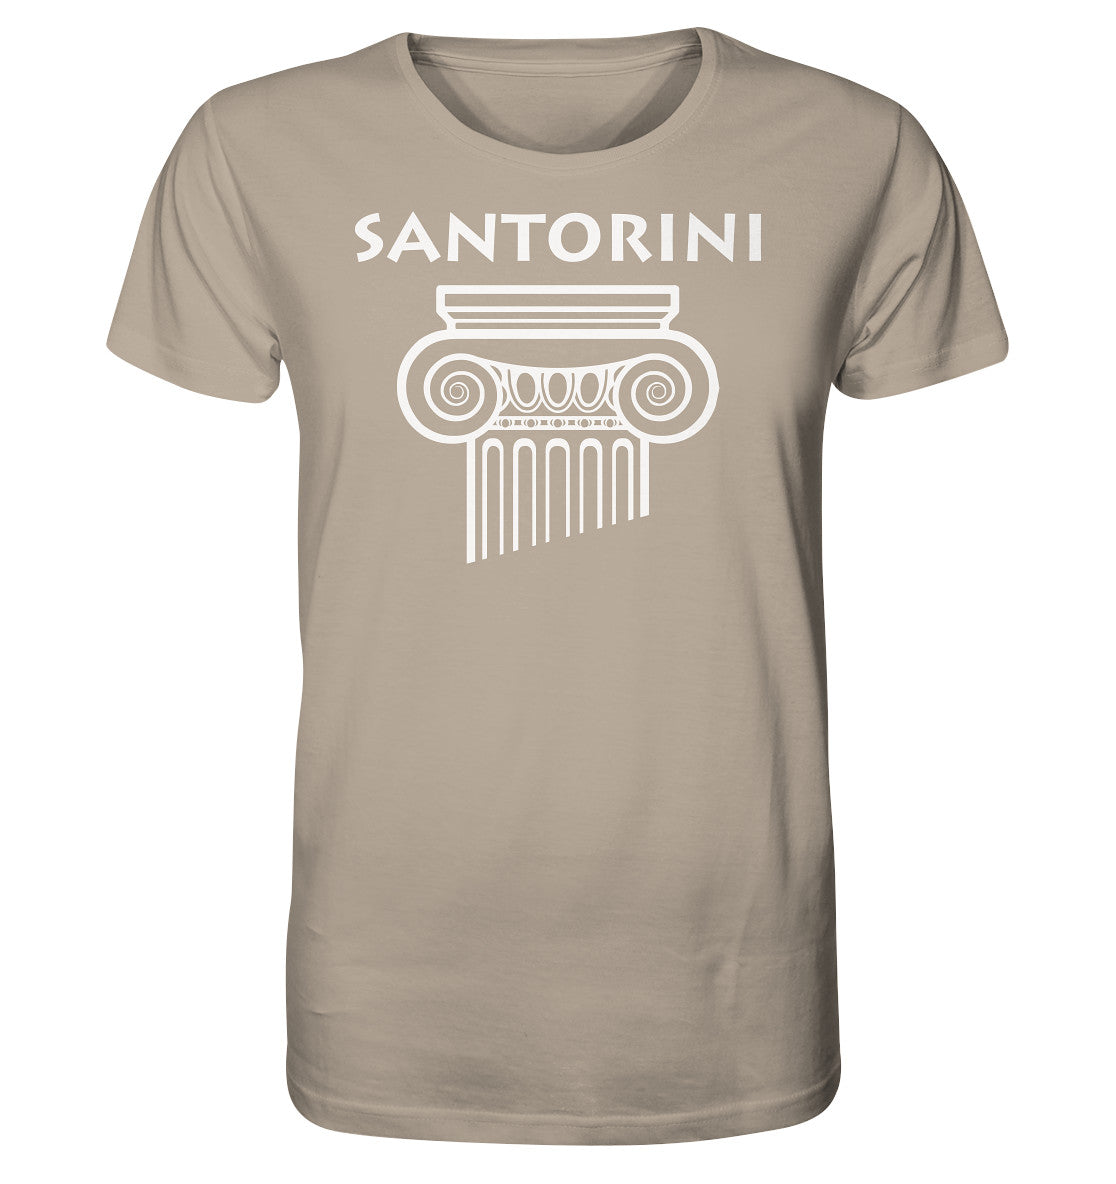 Tête de colonne grecque de Santorin - Chemise biologique